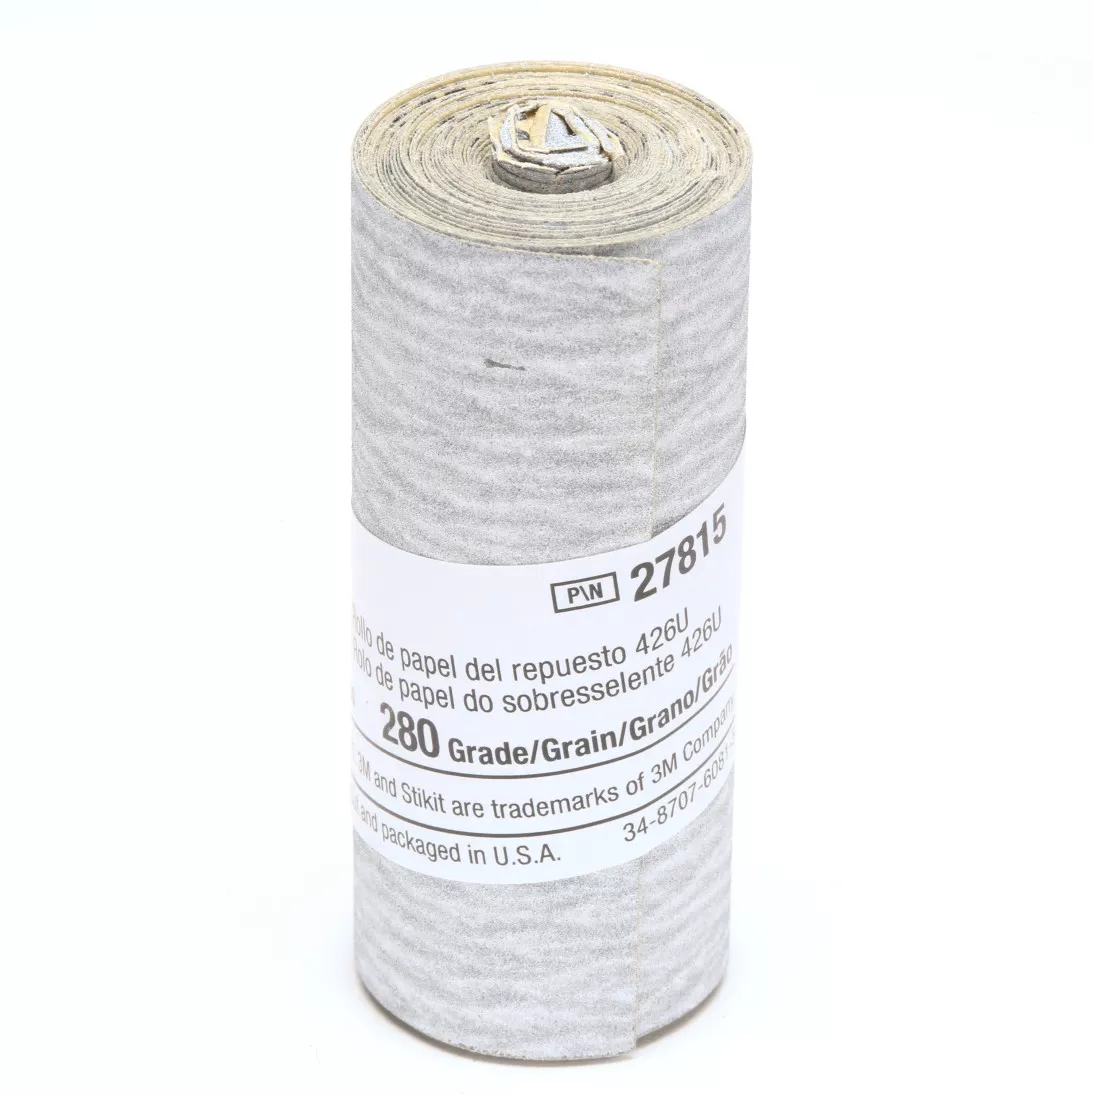 3M™ Stikit™ Paper Refill Roll 426U, 280 A-weight, 2-1/2 in x 100 in, 10
per inner 50 per case